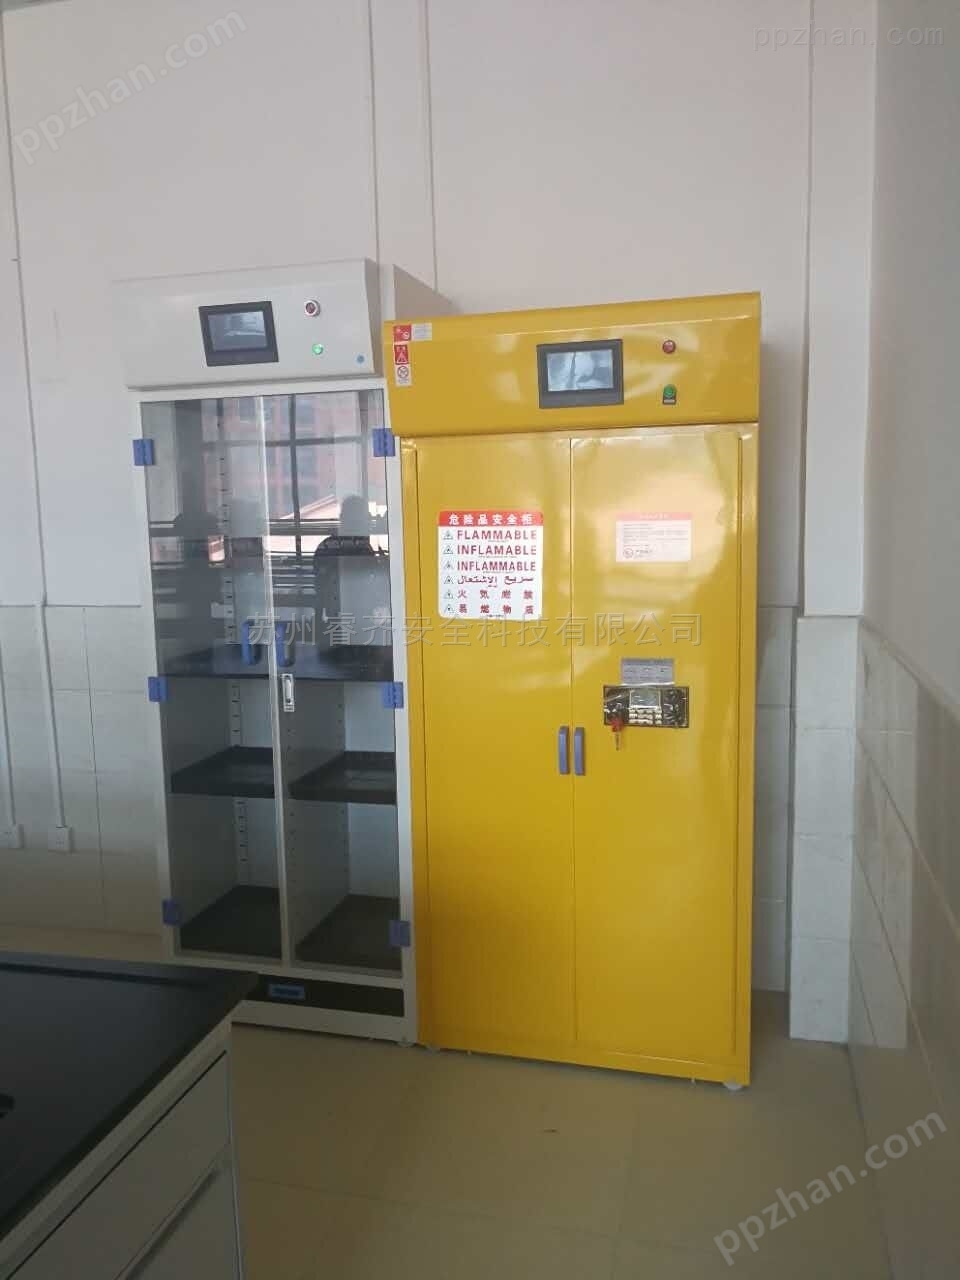 重庆实验室无管道净气型储药柜